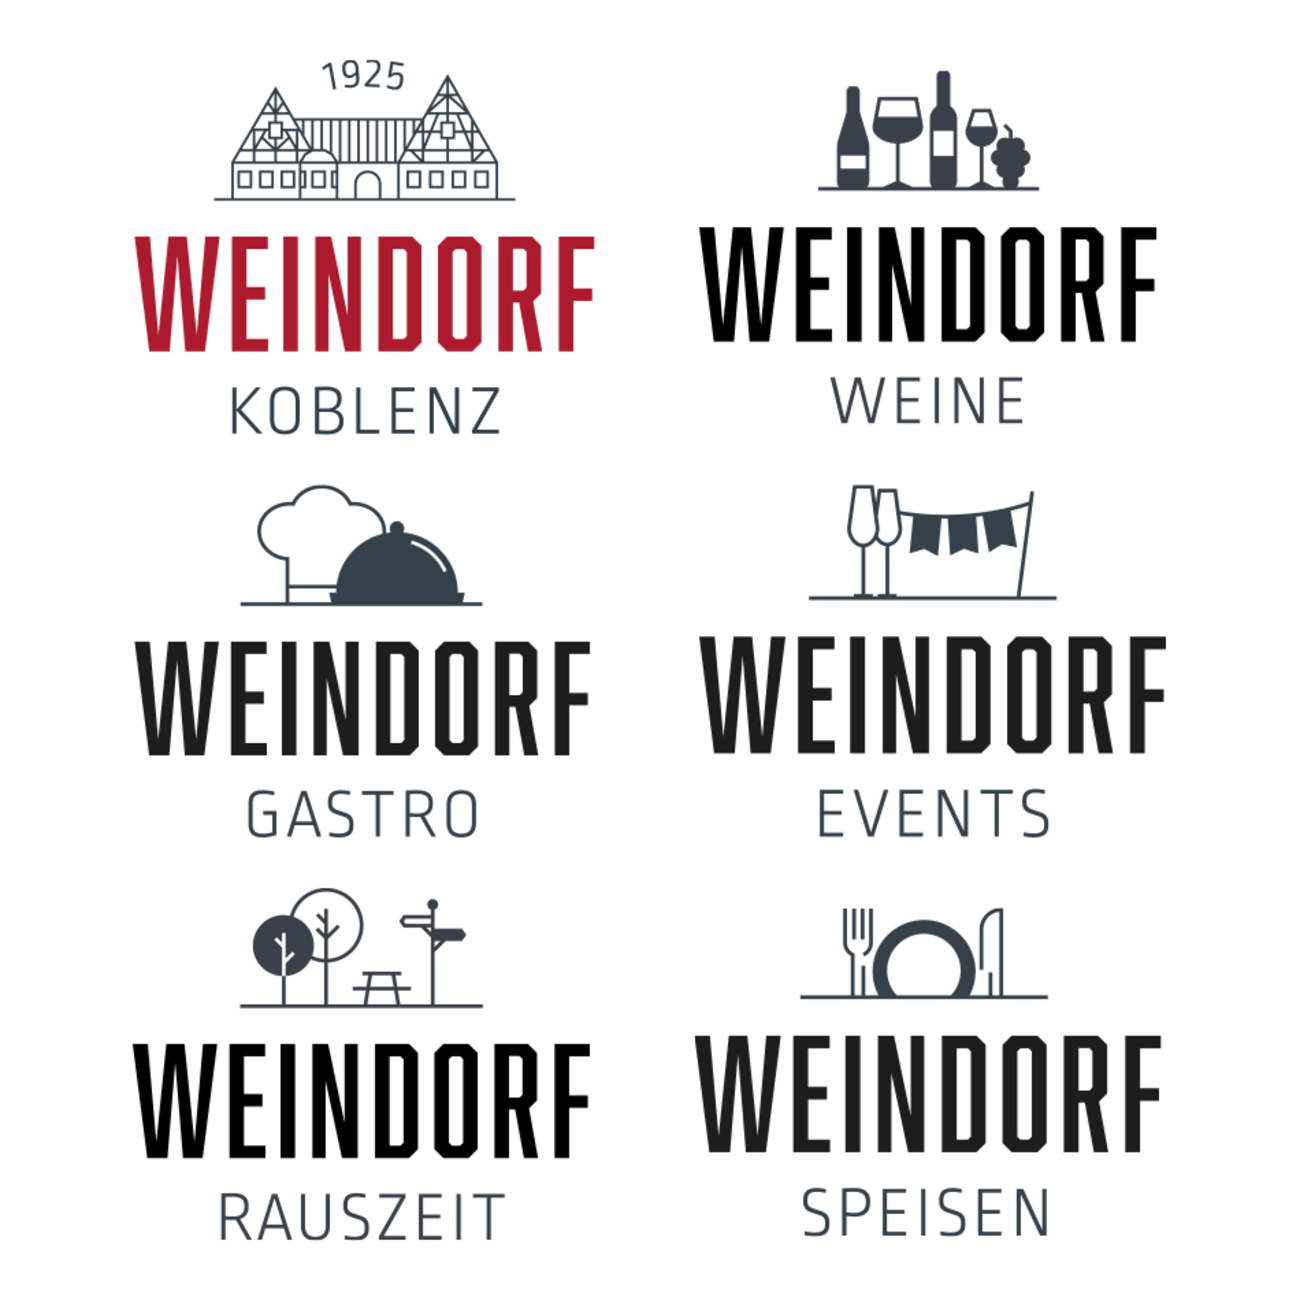 Weindorf Koblenz Re-Branding